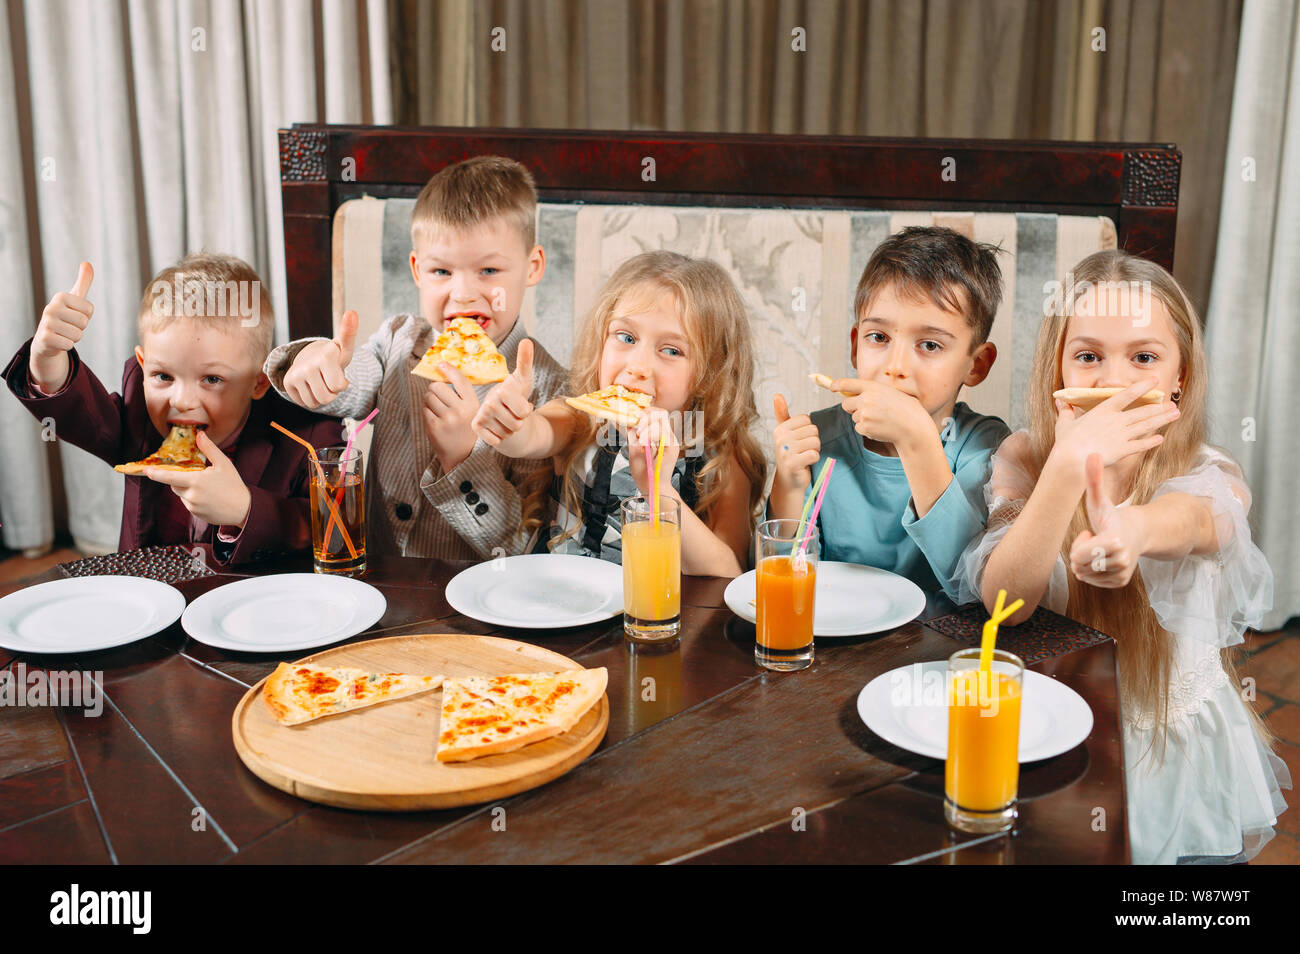 lovely children eat pizza in the restaurant Stock Photo